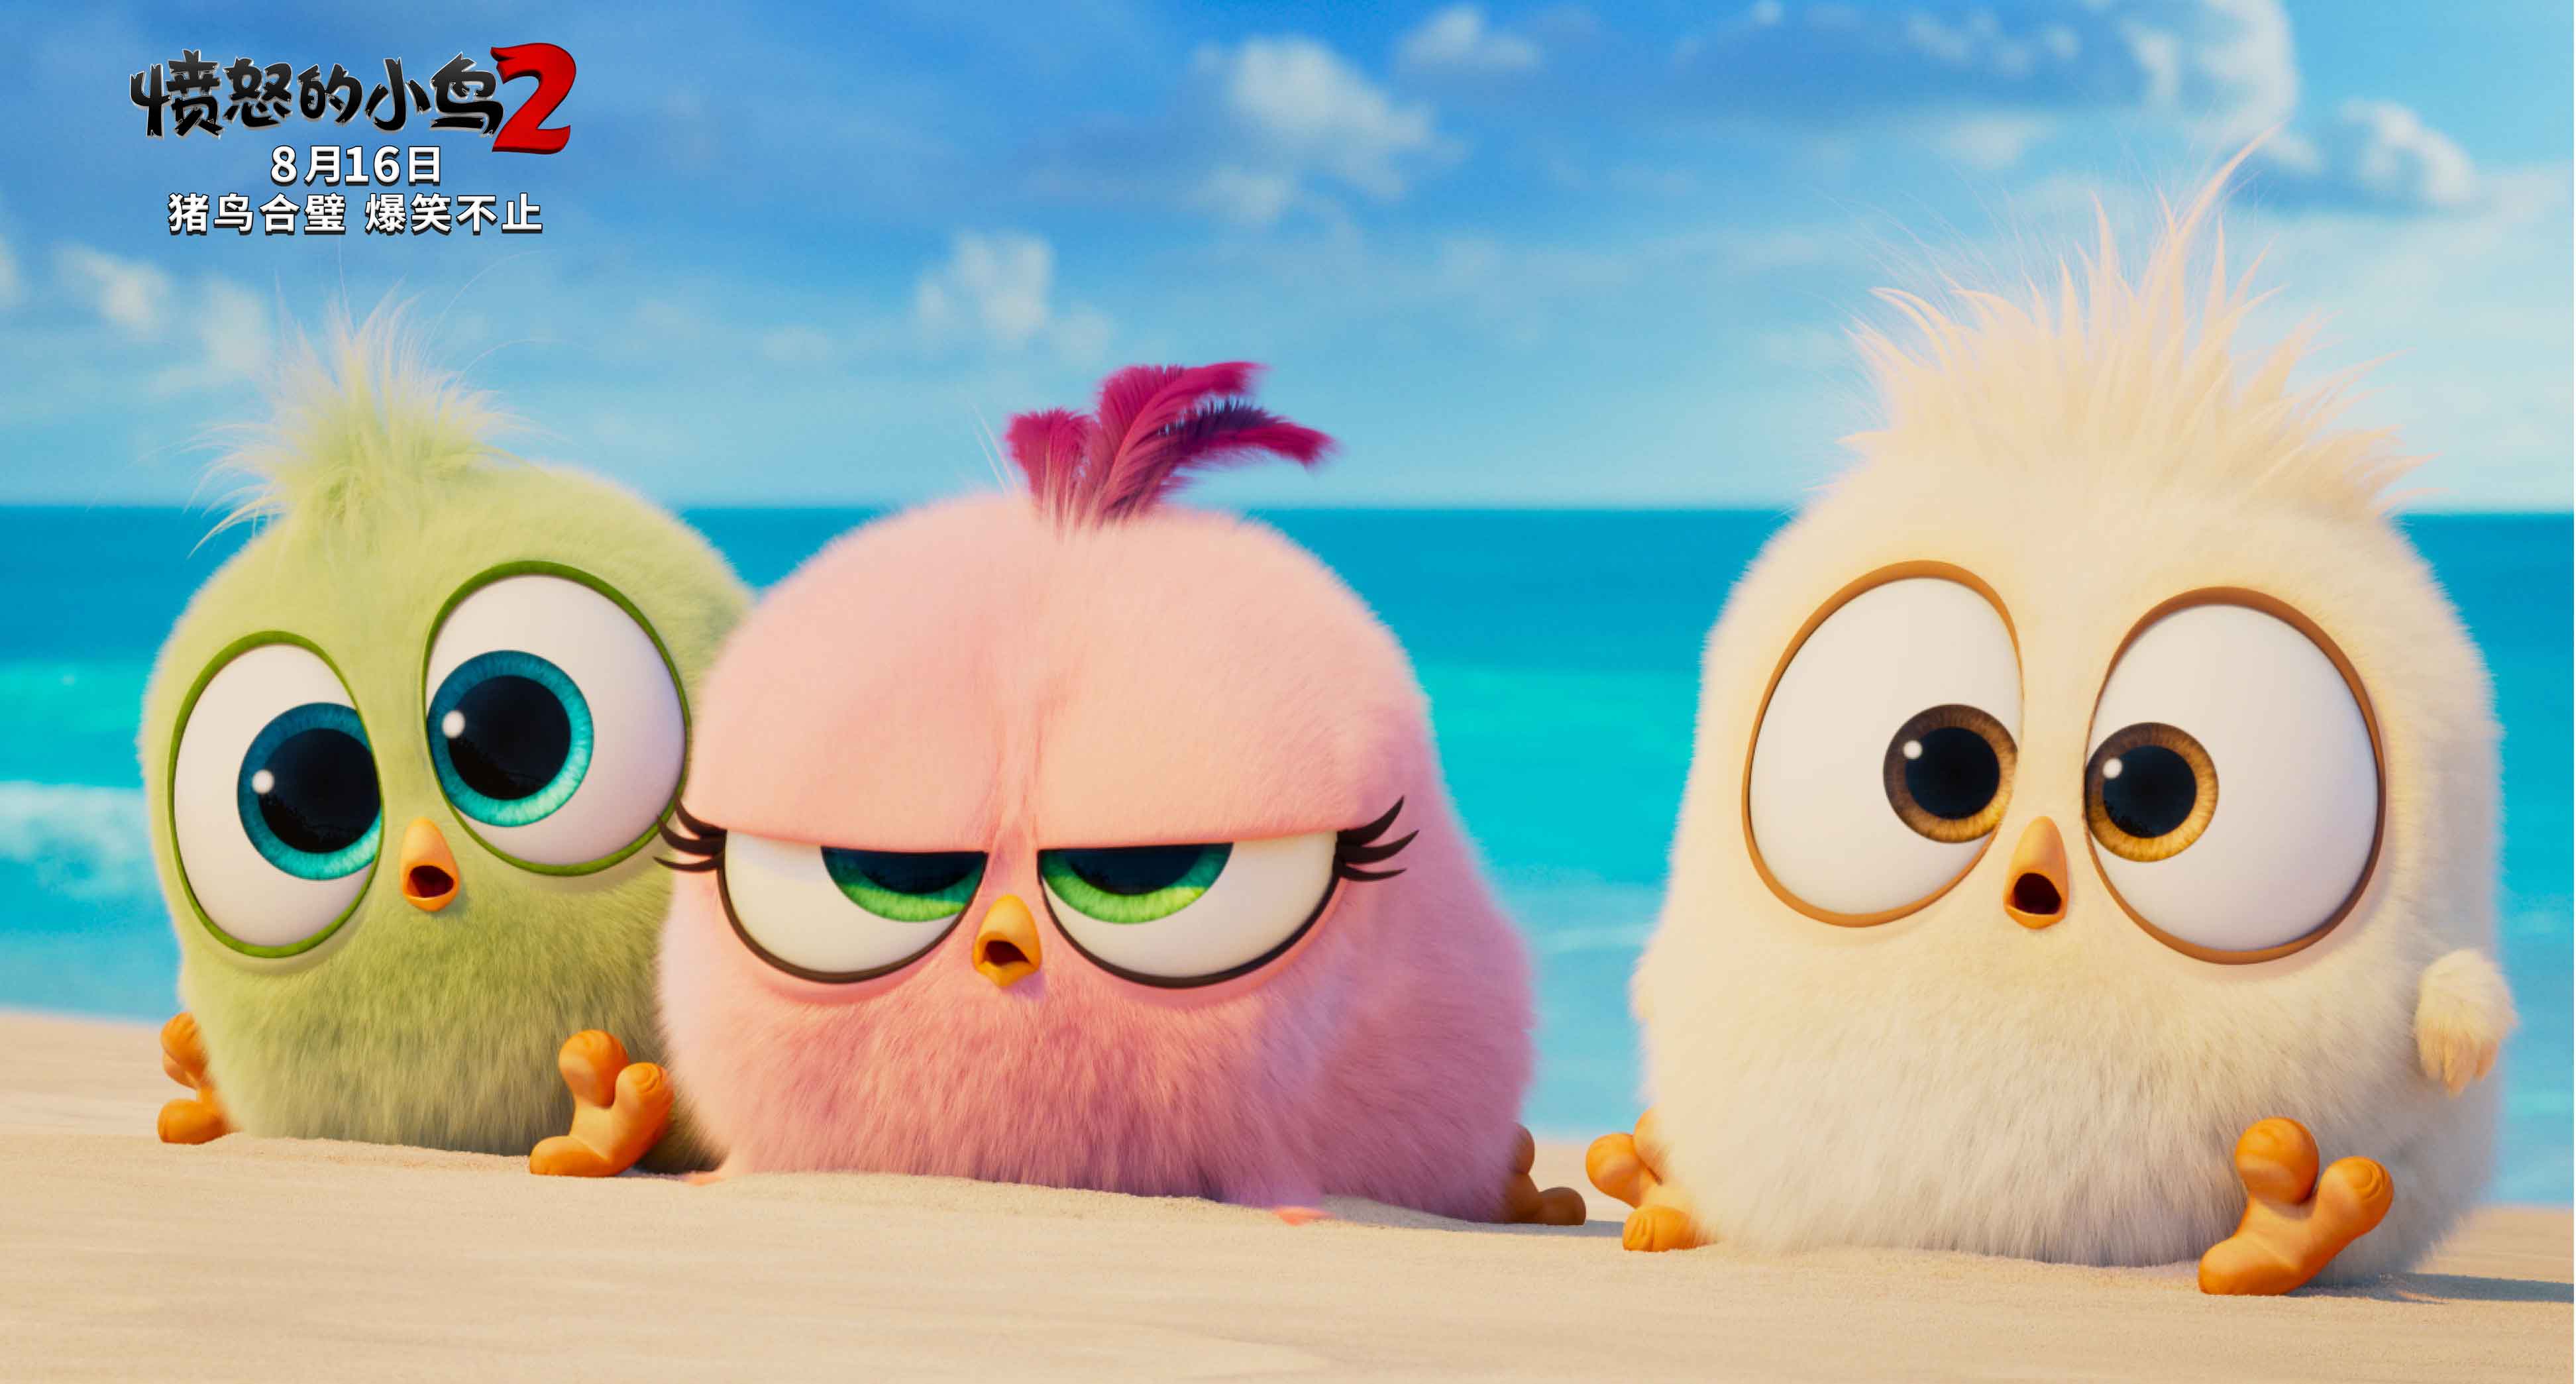 《愤怒的小鸟2》海外口碑爆棚 8月最强喜剧动画电影即将上映